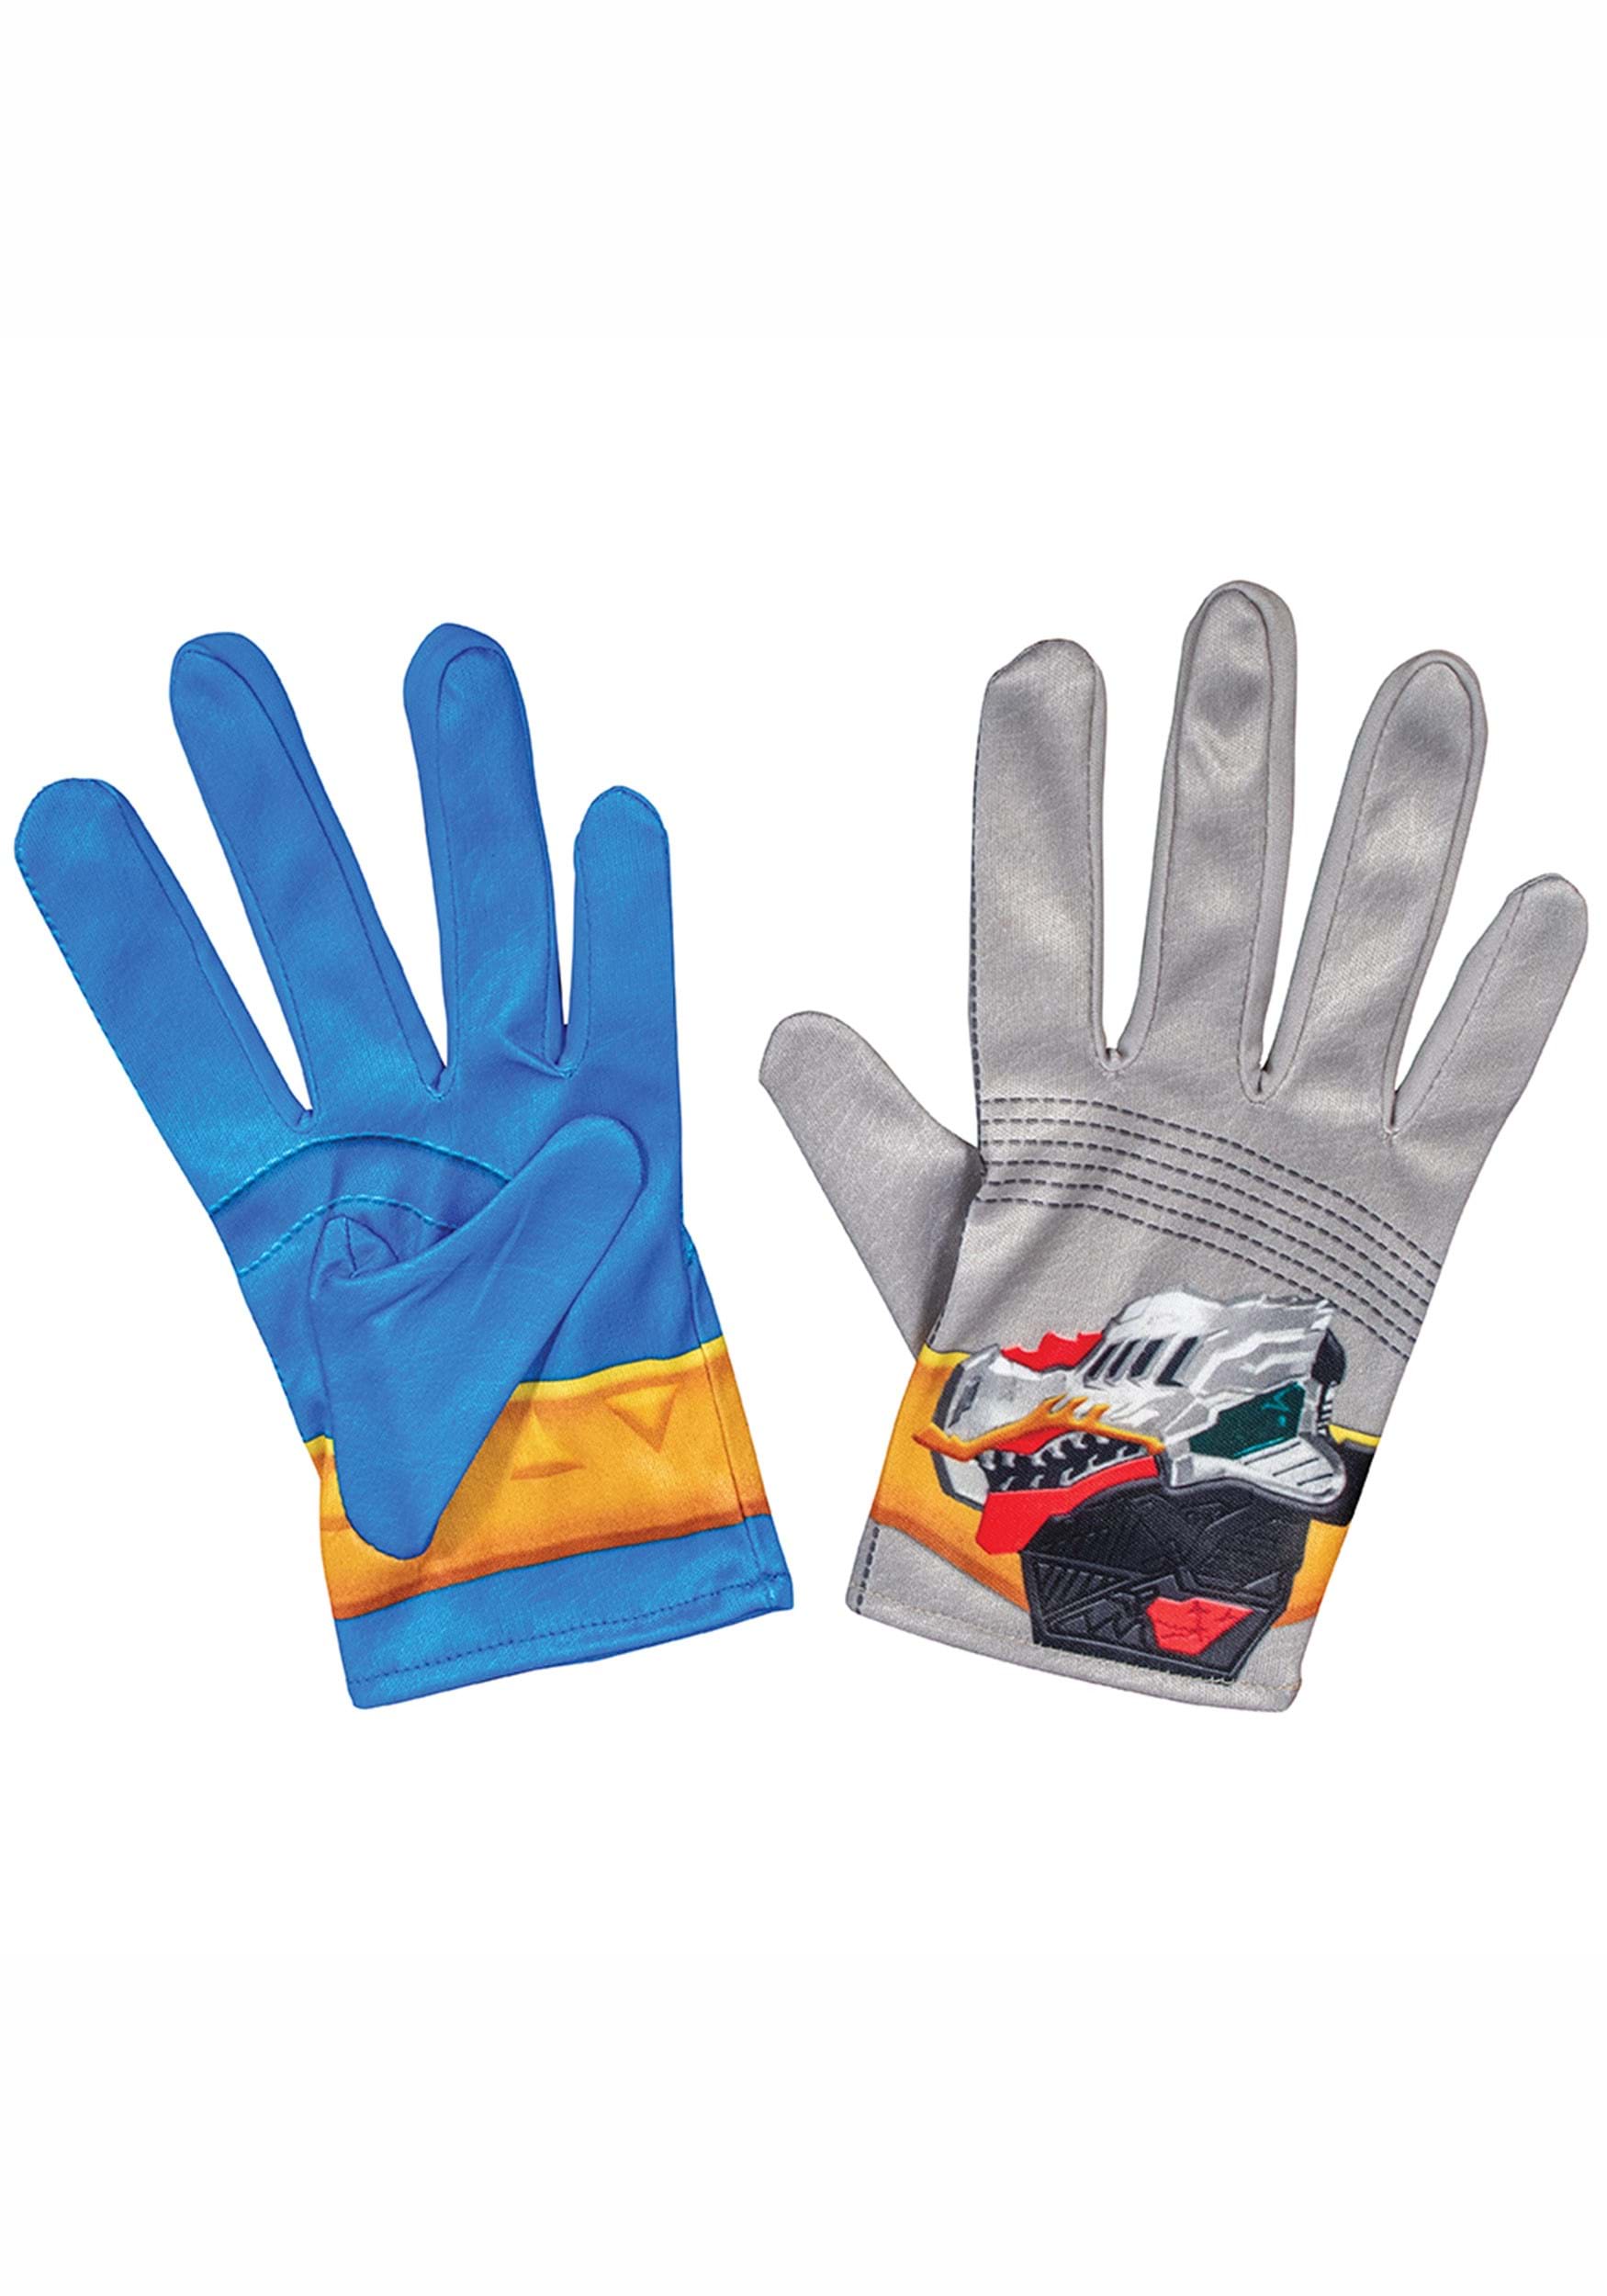 Power Rangers Dino Fury Blue Ranger Kid's Gloves